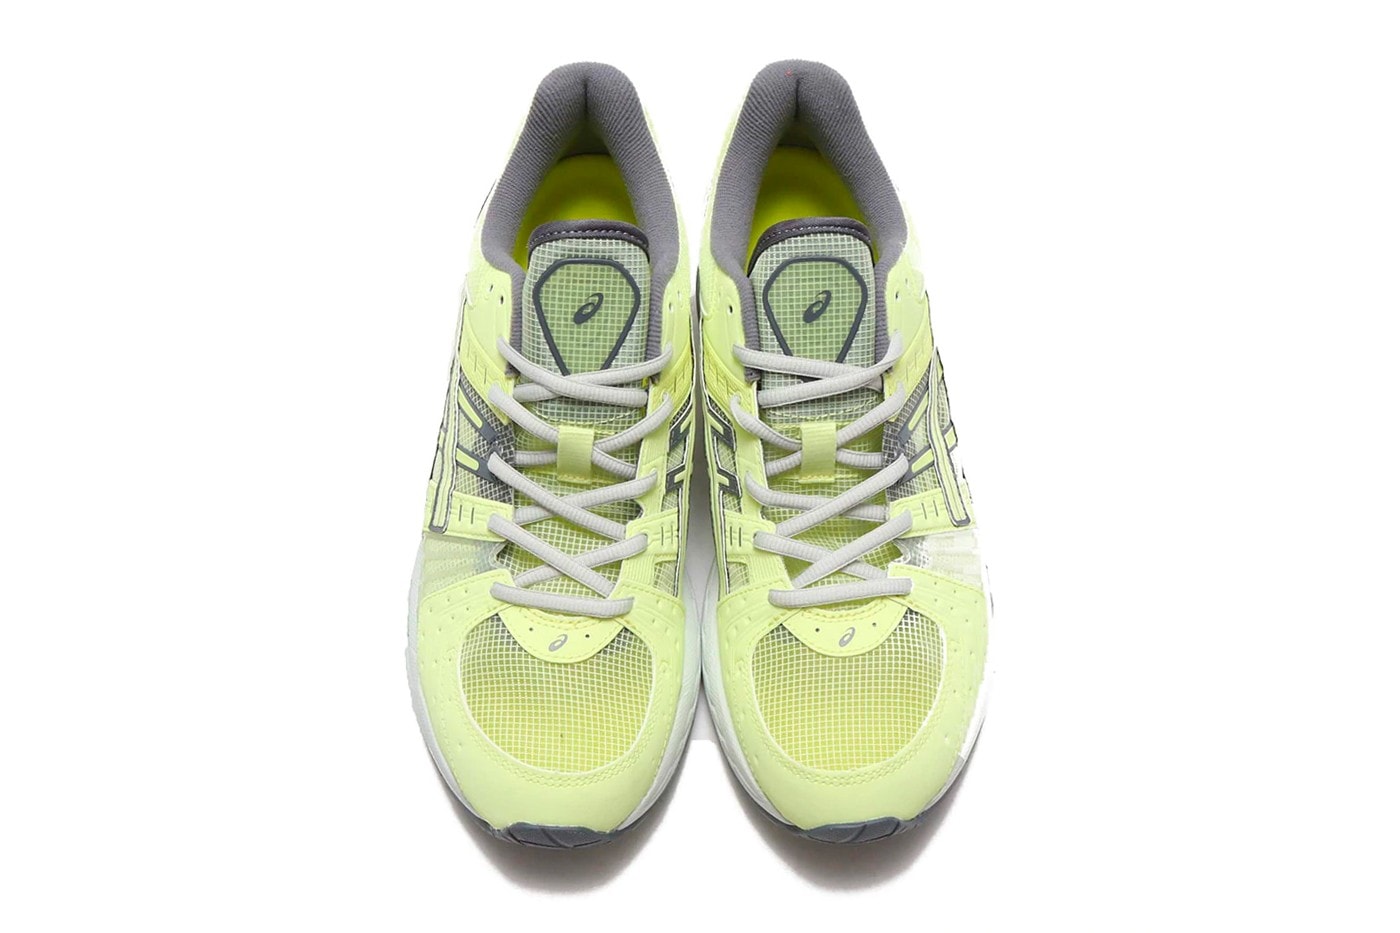 ASICS GEL-Kinsei OG 螢光黃鞋款正式發佈